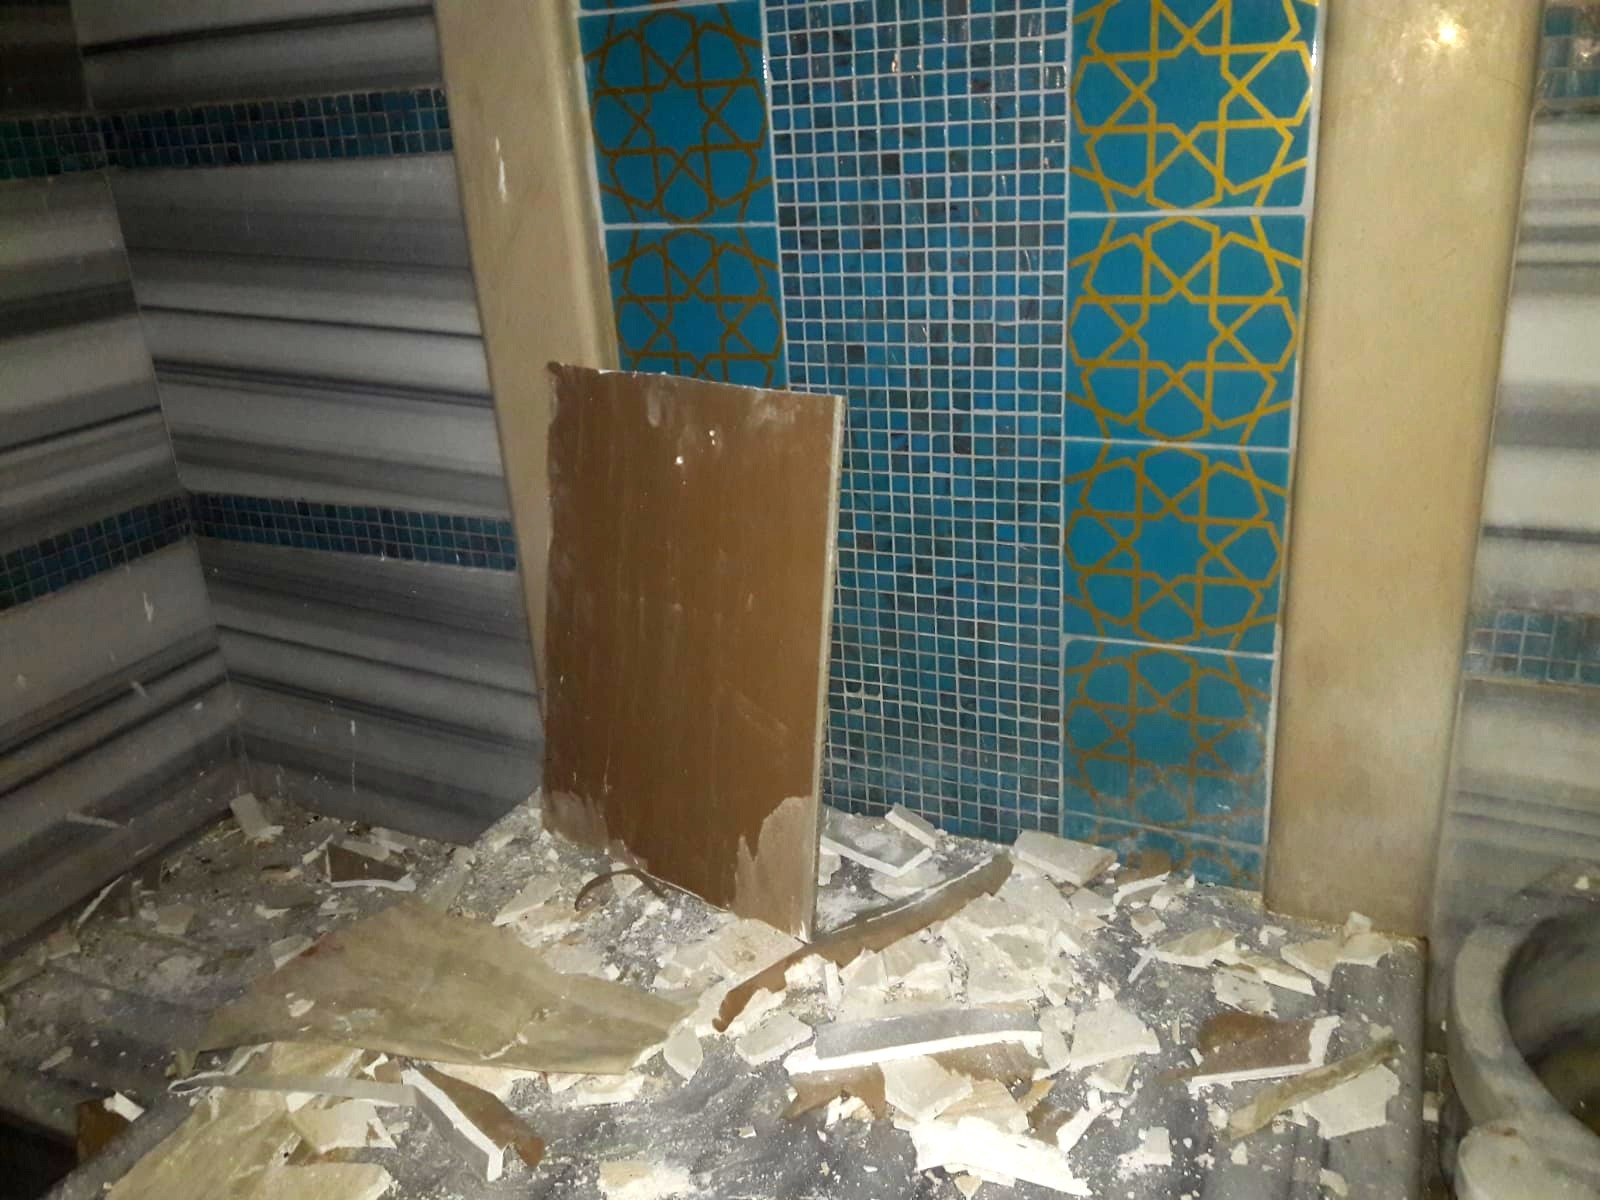 Был произведен ремонт потолка хамама, который находился под угрозой обрушения из-за отсутствия обслуживания и влаги